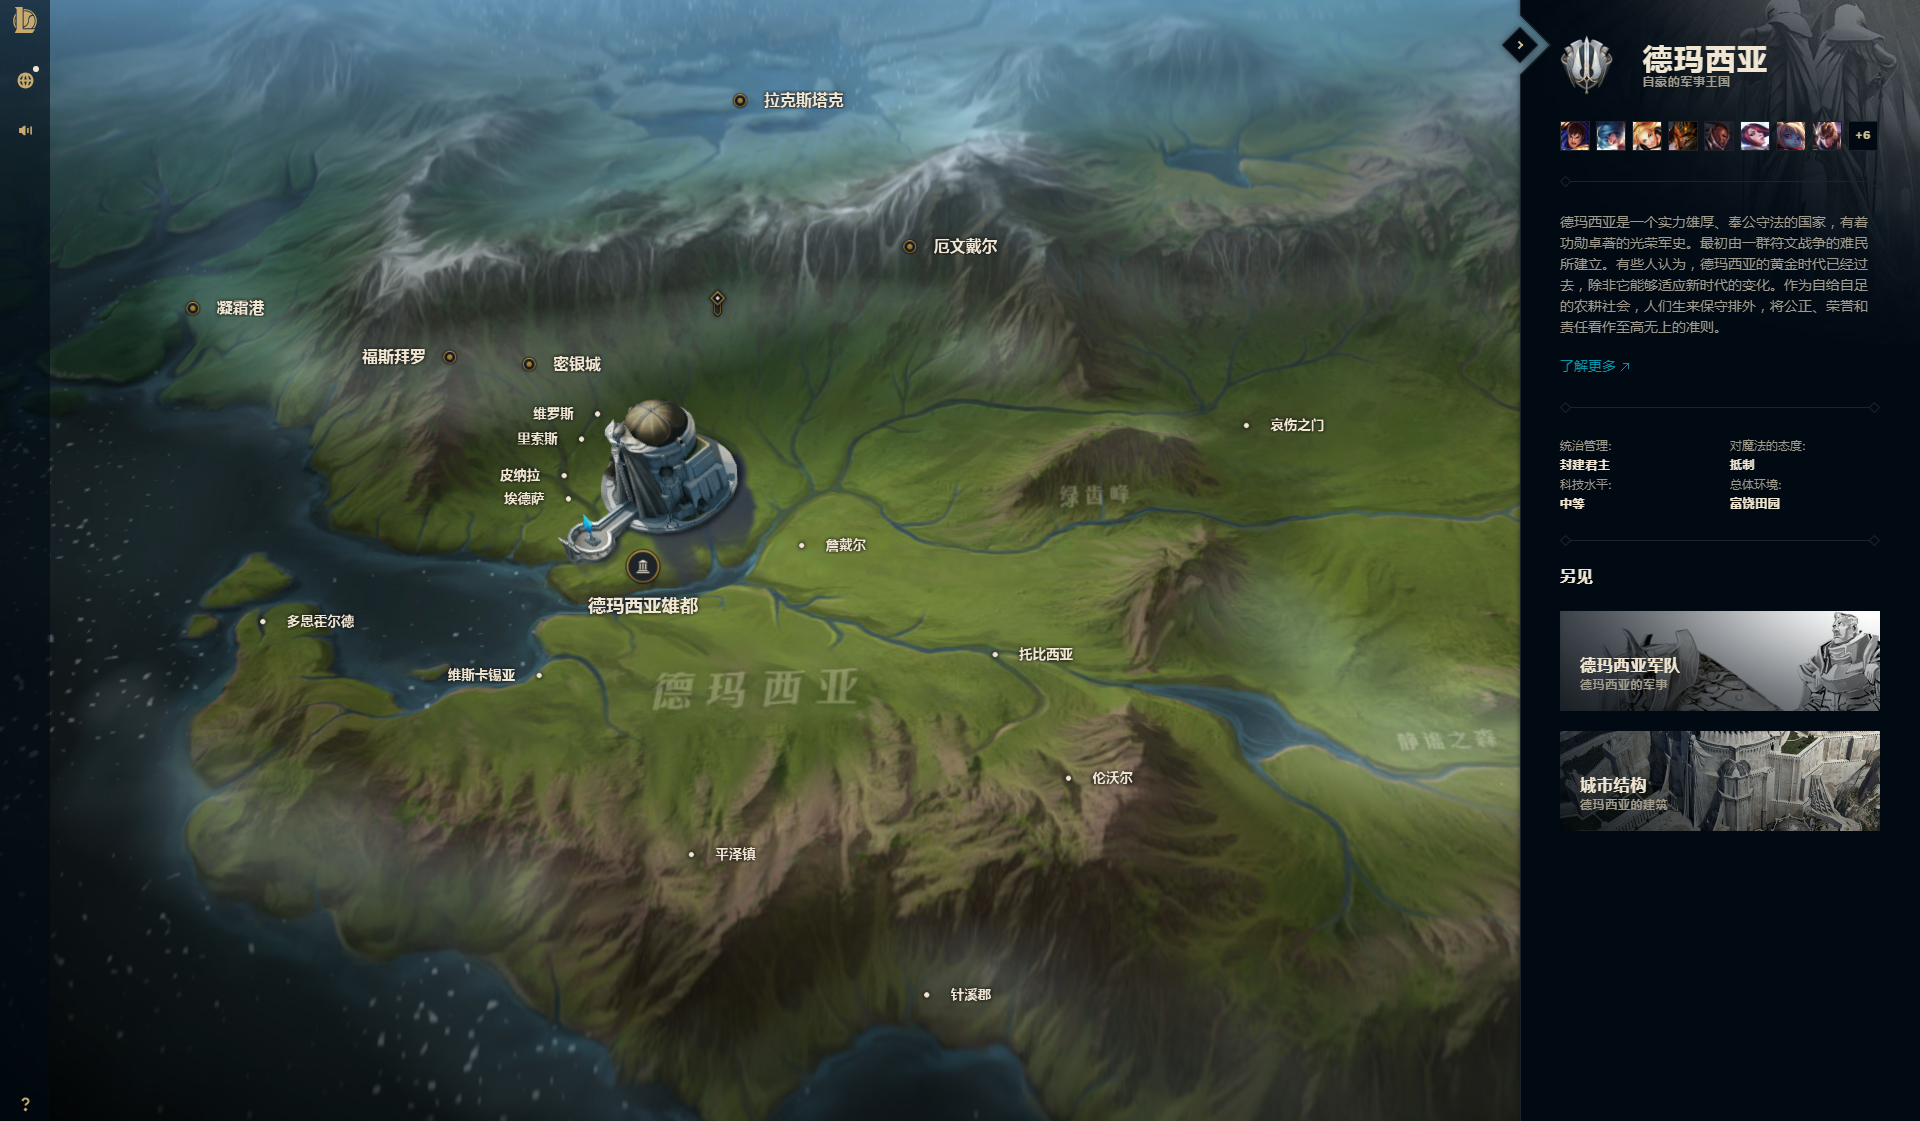 英雄联盟宇宙平台全新上线:符文之地全貌互动地图